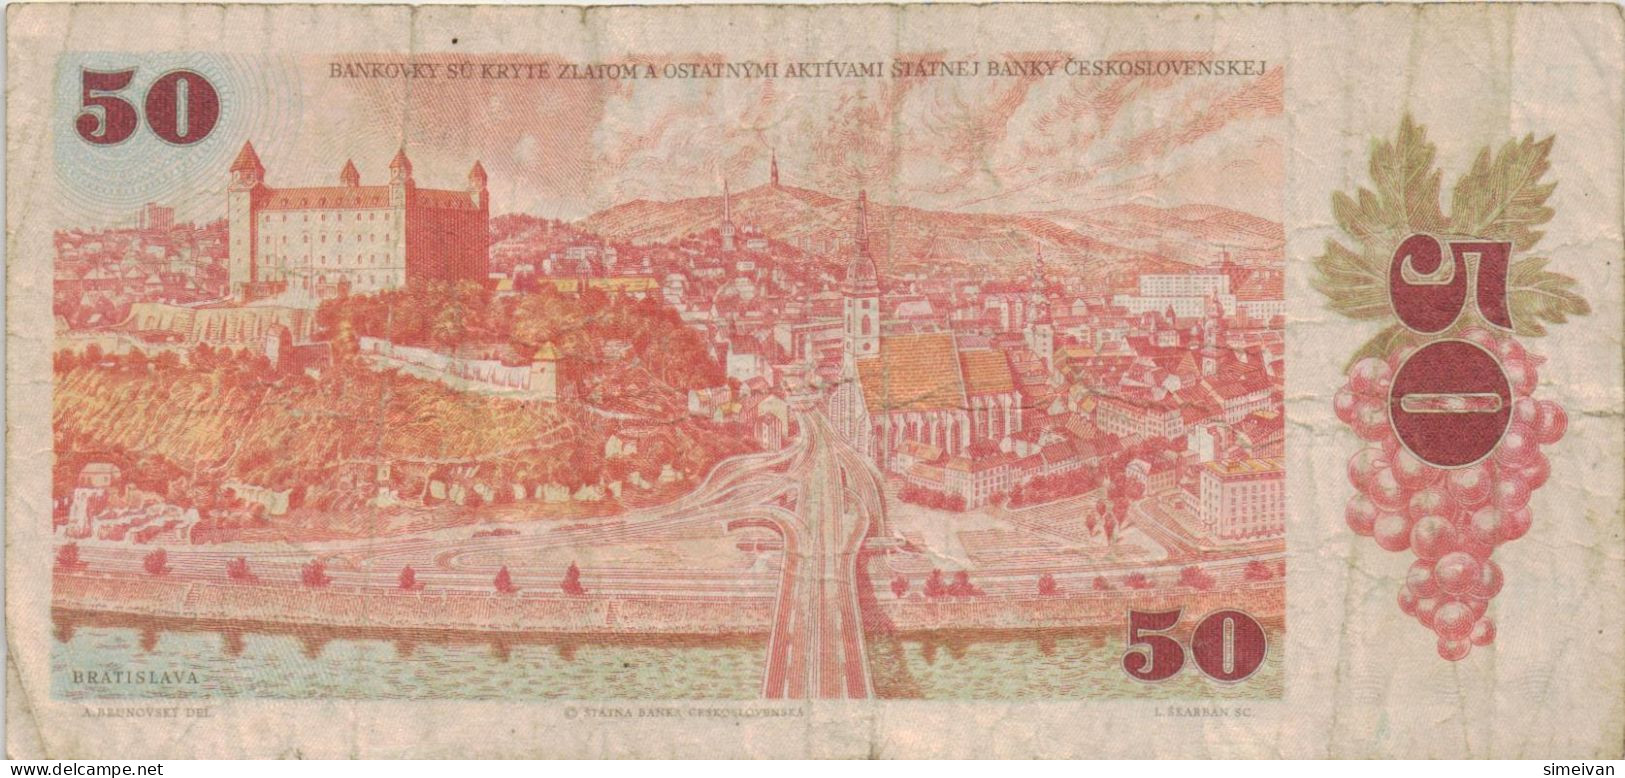 Czechoslovakia 50 Korun 1987 P-96a Banknote Europe Currency Tchécoslovaquie Tschechoslowakei #5260 - Tchécoslovaquie